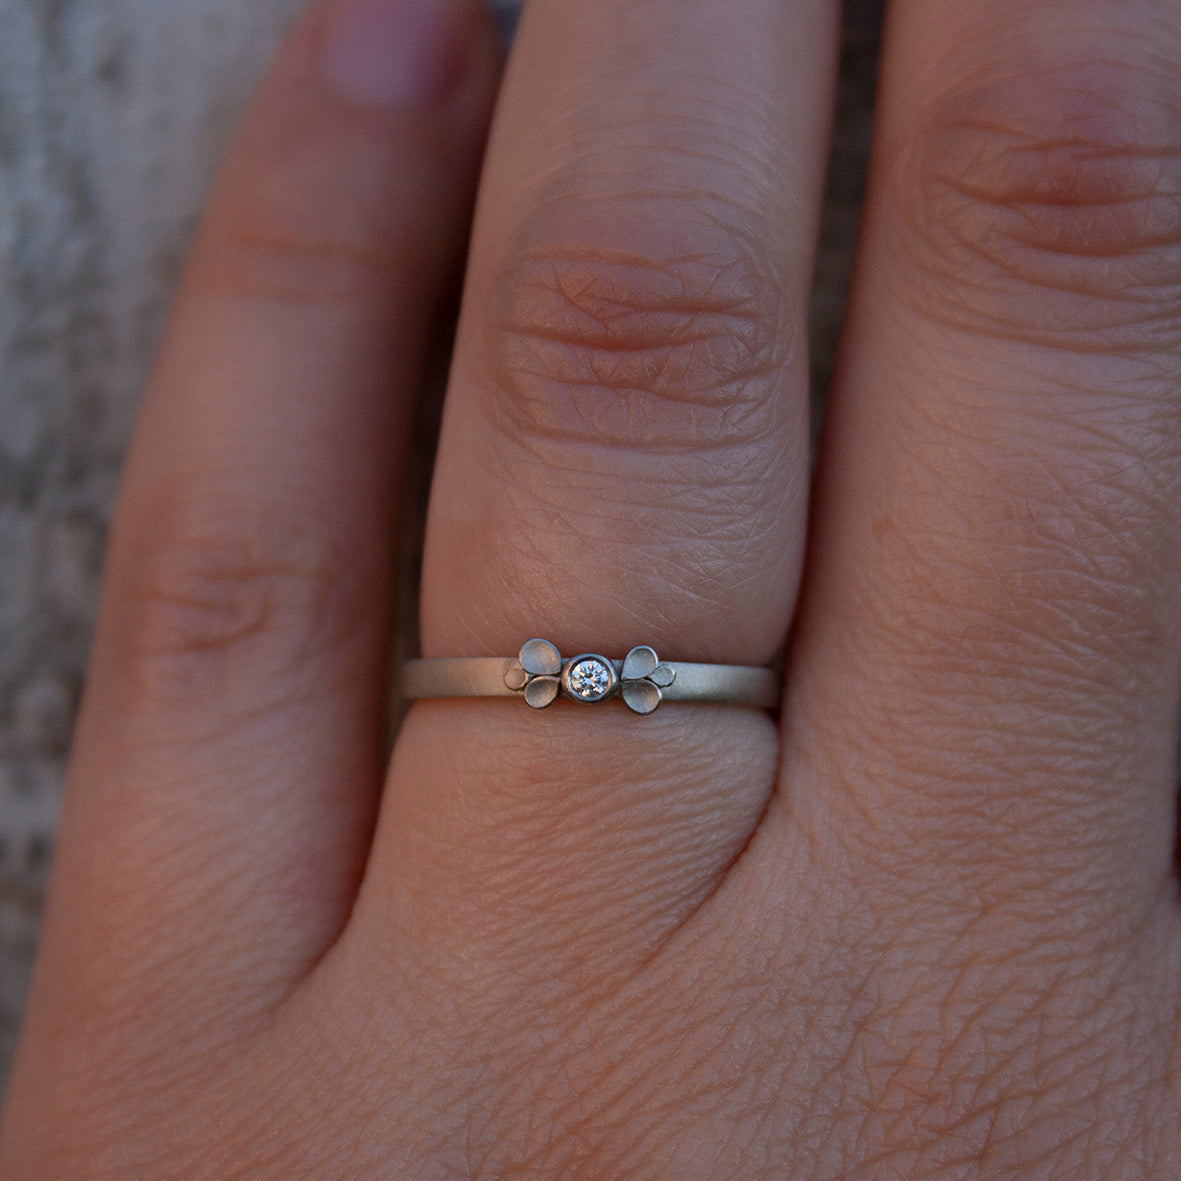 Dahlia small Bow 18ct. white Gold Diamond Ring